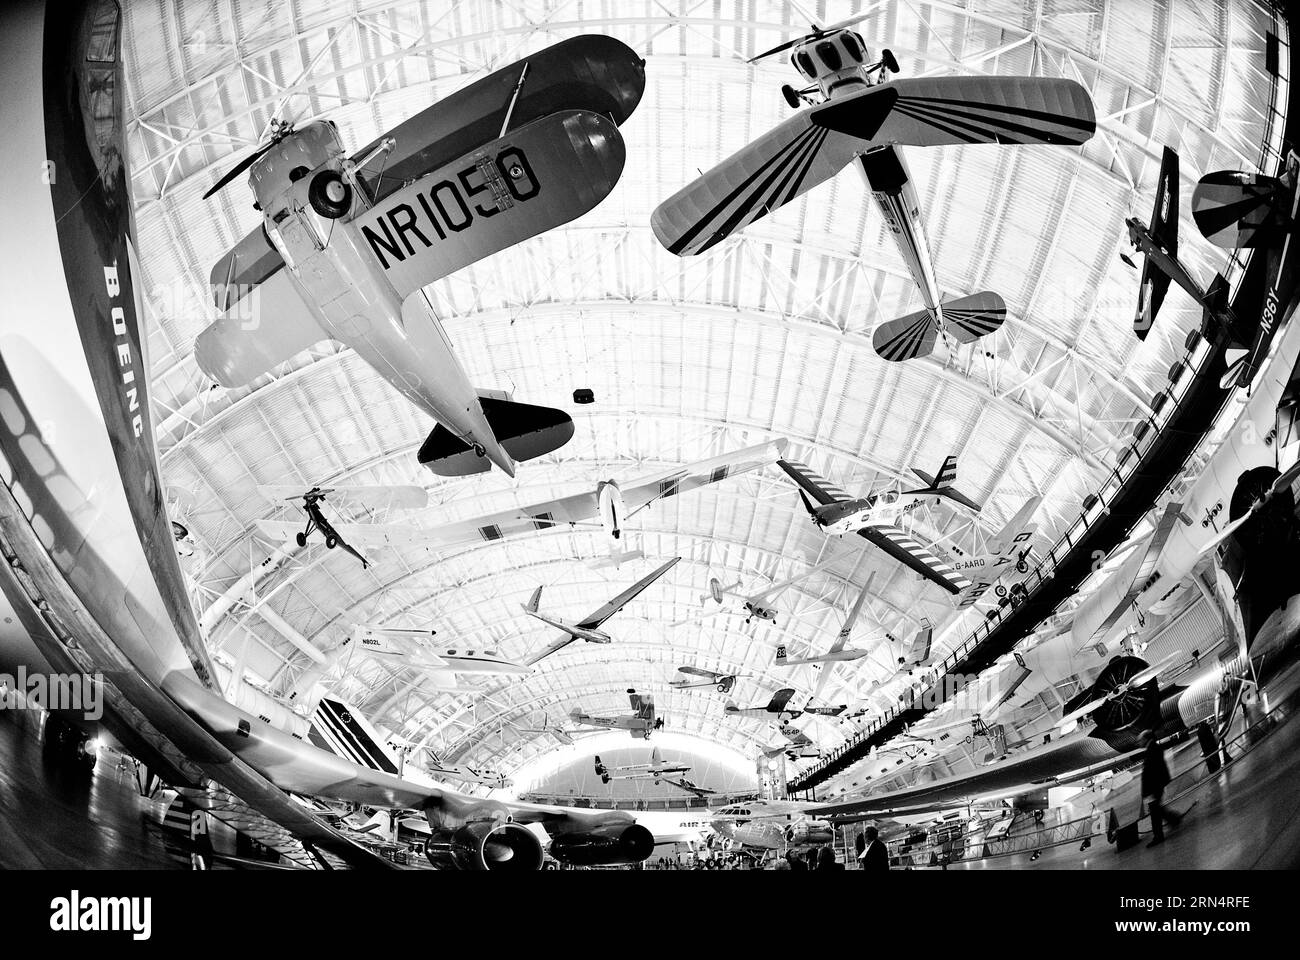 CHANTILLY, Virginia, Vereinigte Staaten – das Smithsonian Udvar-Hazy Center zeigt eine umfangreiche Sammlung von Luft- und Raumfahrtgegenständen. Als Erweiterung des National Air and Space Museum bietet die Anlage Besuchern einen umfassenden Einblick in die Geschichte und den Fortschritt des Fluges. Stockfoto